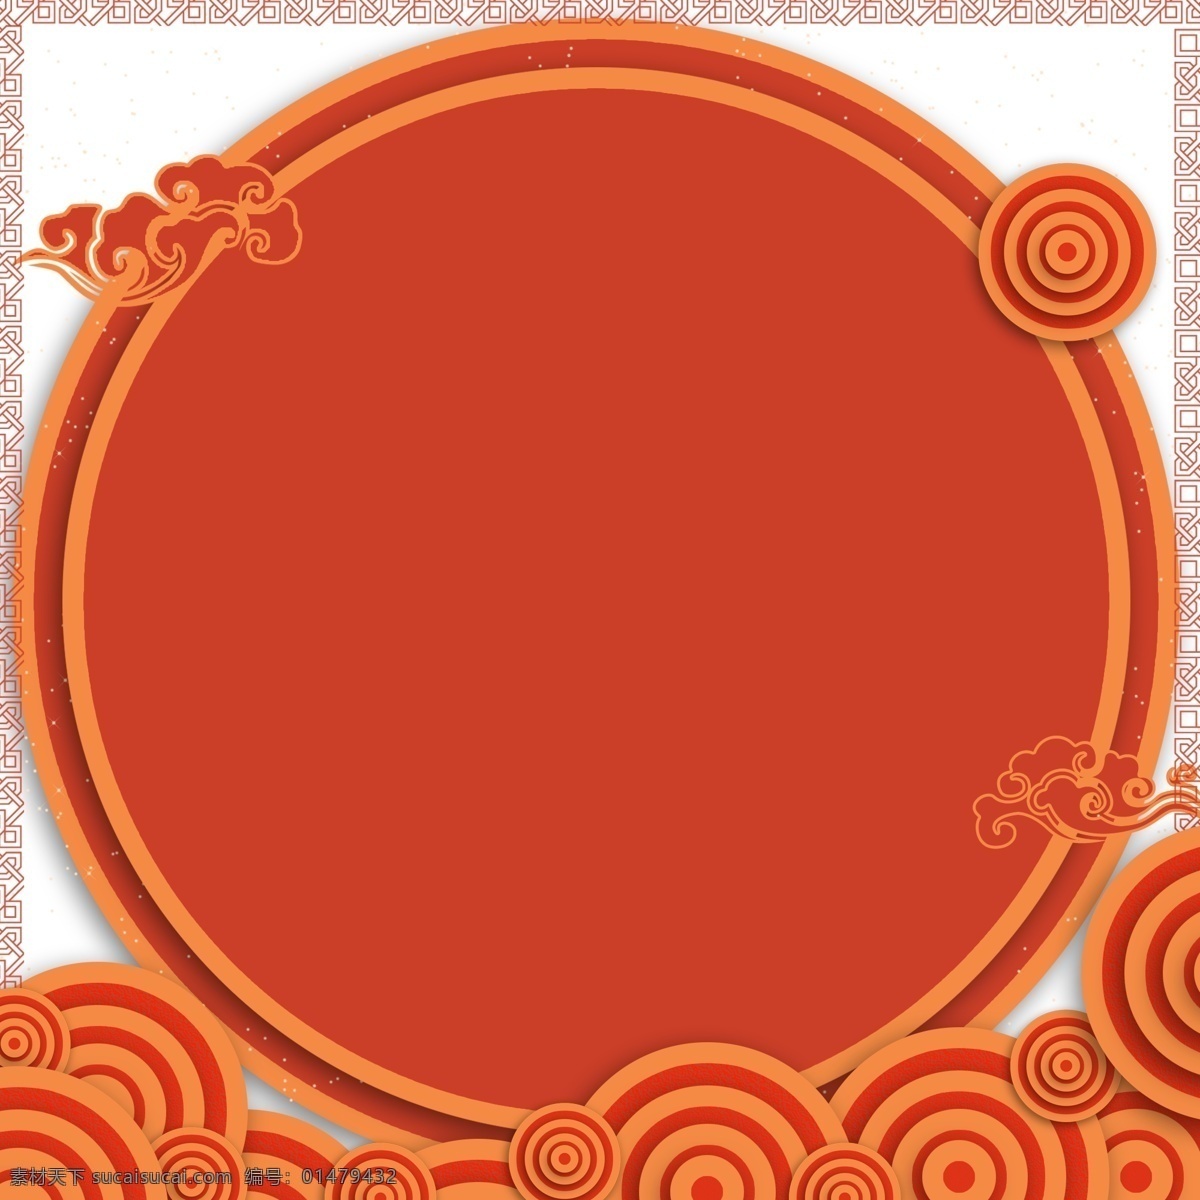 原创 云纹 砖 红色 古典 艺术 背景 时尚 促销 清新 春节 砖红色 简约 腊八 邀请